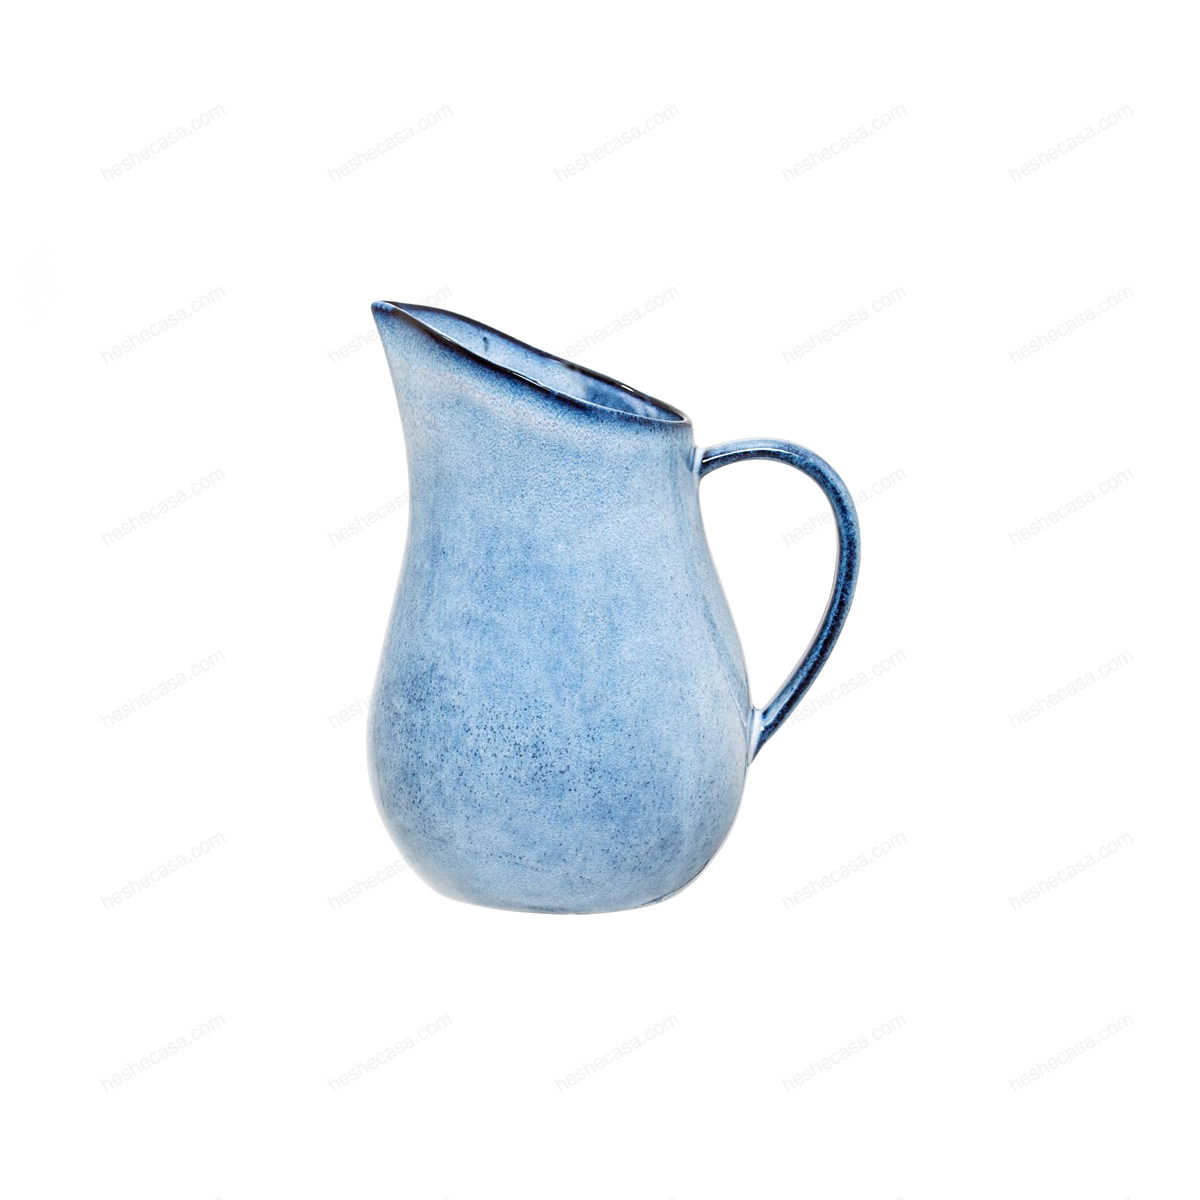 Sandrine Jug, Blue, Stoneware 水壶